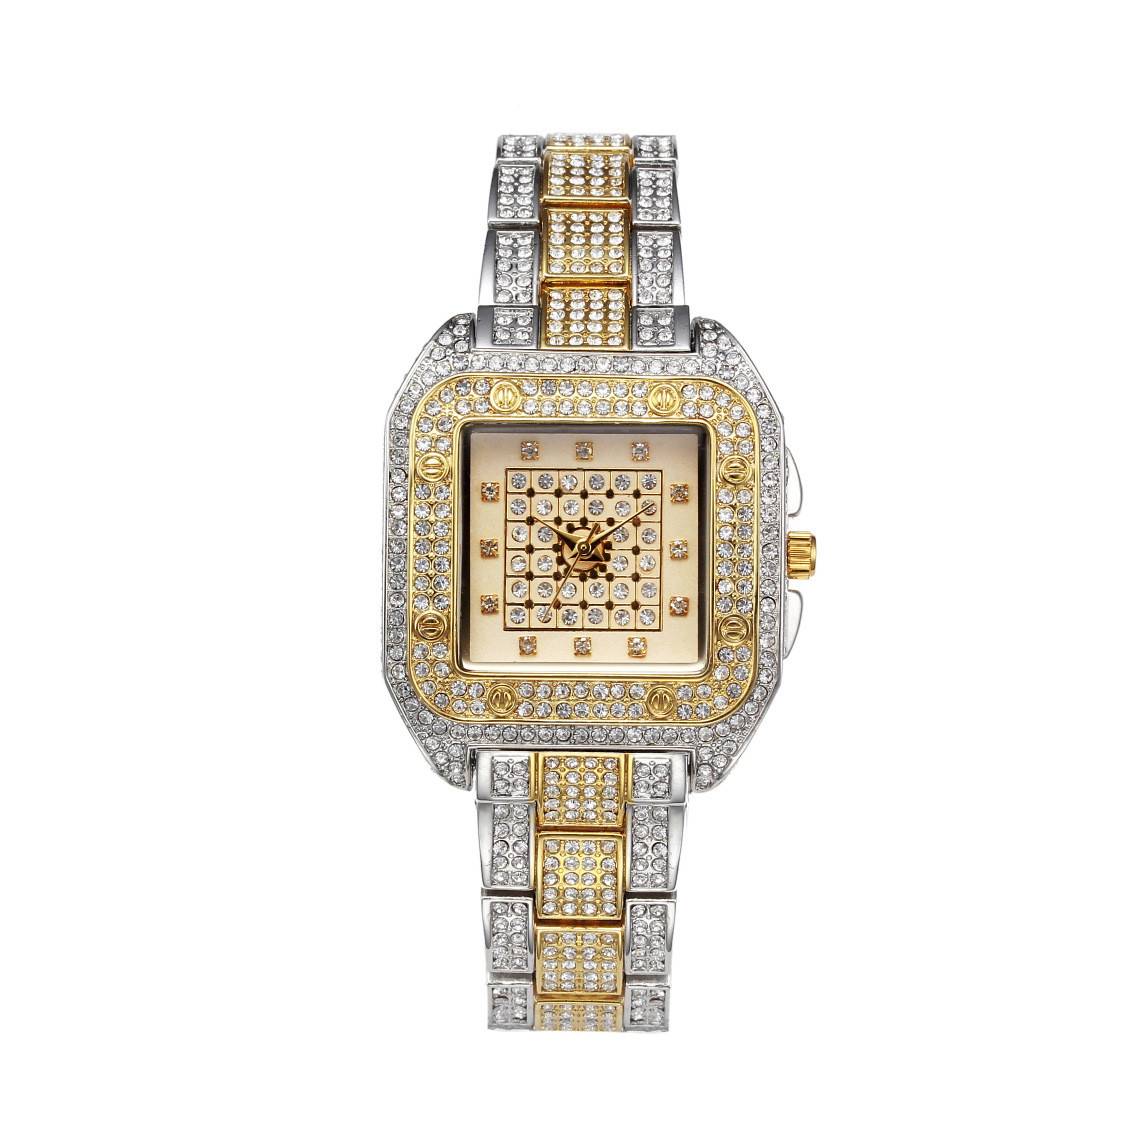 著名的品牌时尚钻石石英豪华手表女士全钻石女性手表